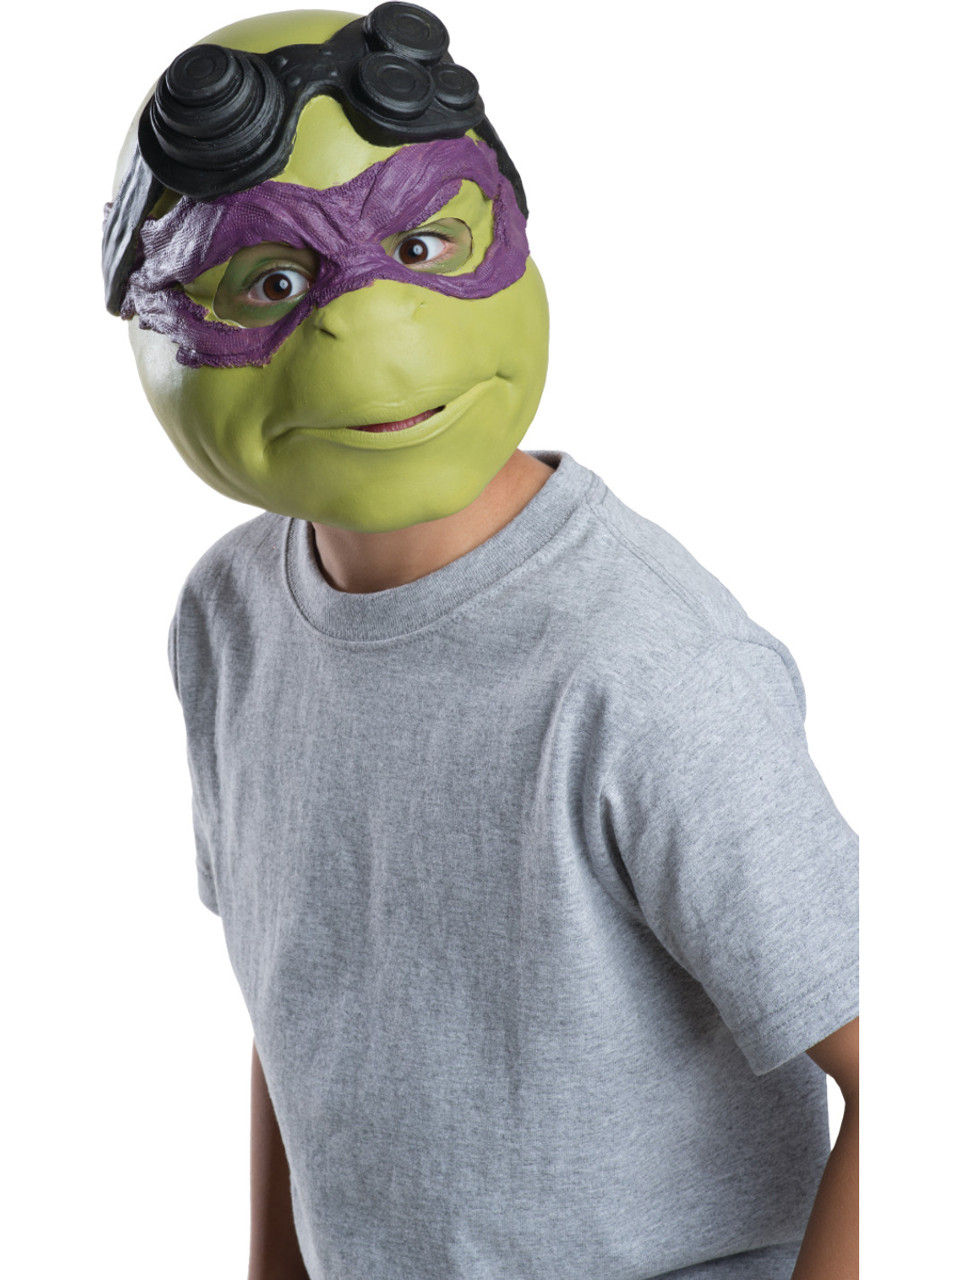 Kid's Teenage Mutant Ninja Turtles 3/4 Donatello Mask